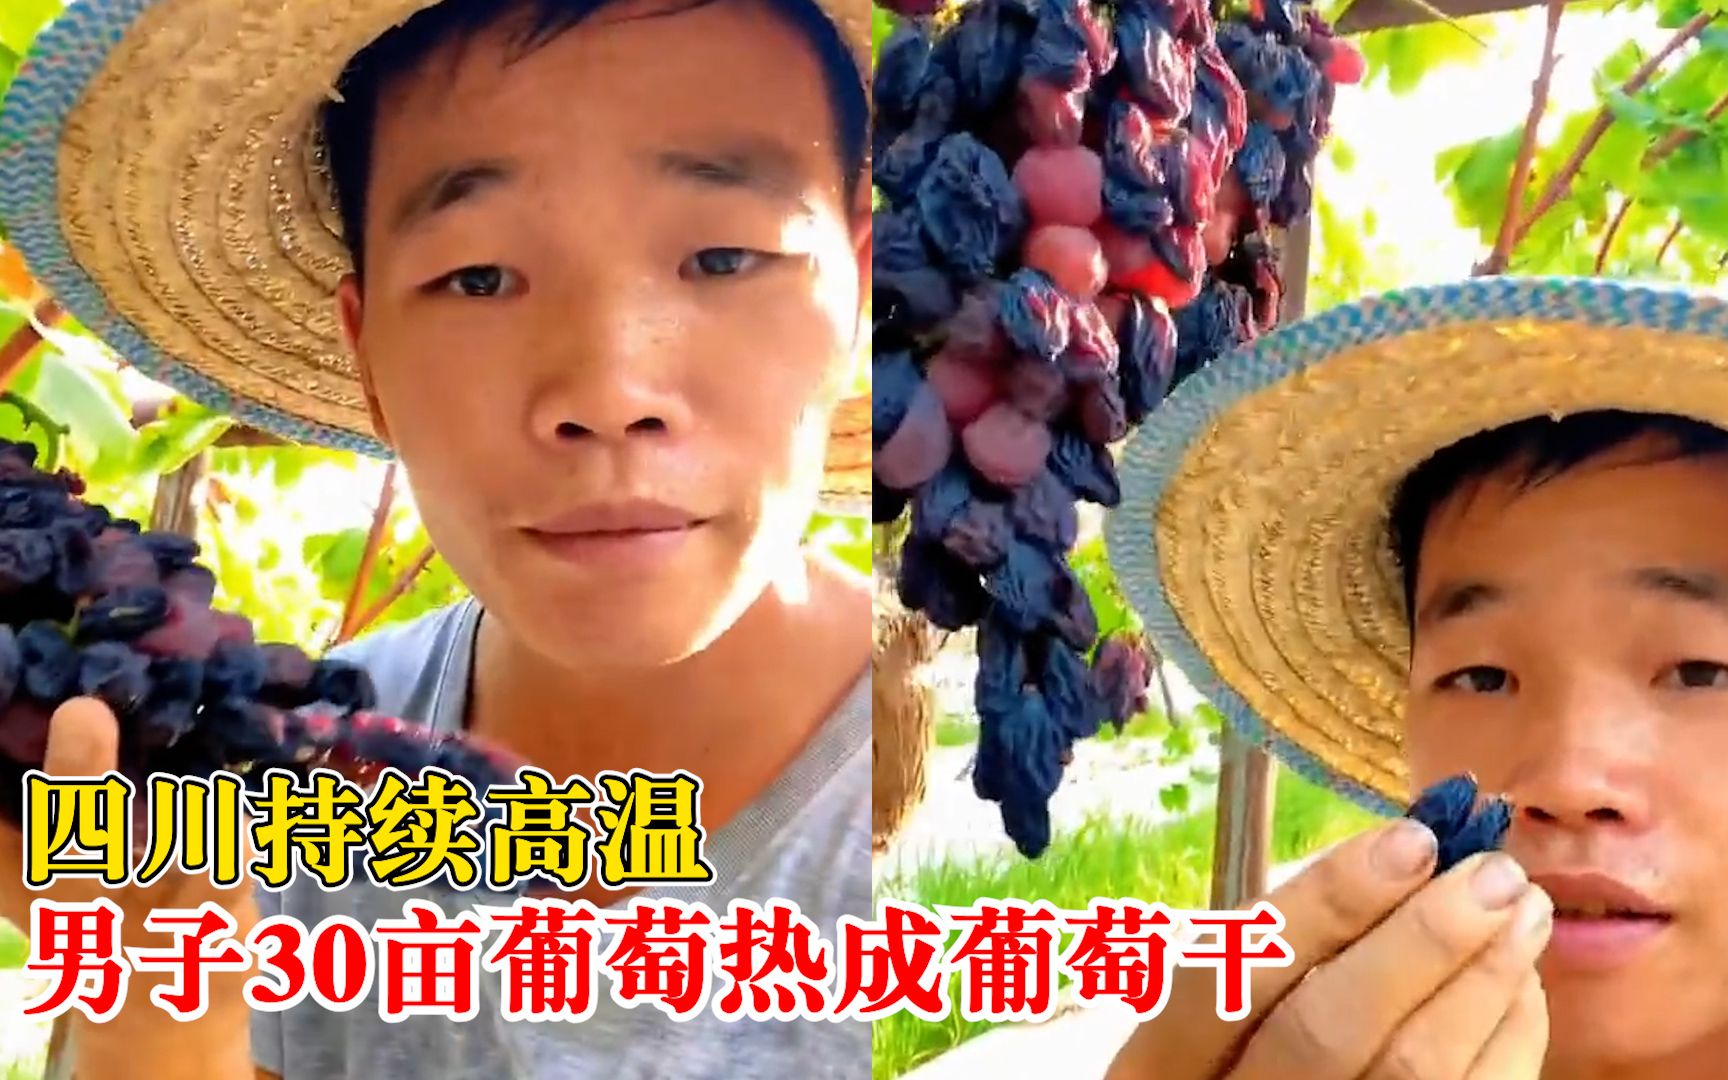 四川高温农户30亩葡萄热成干：没遇到过，损失大概30多万元